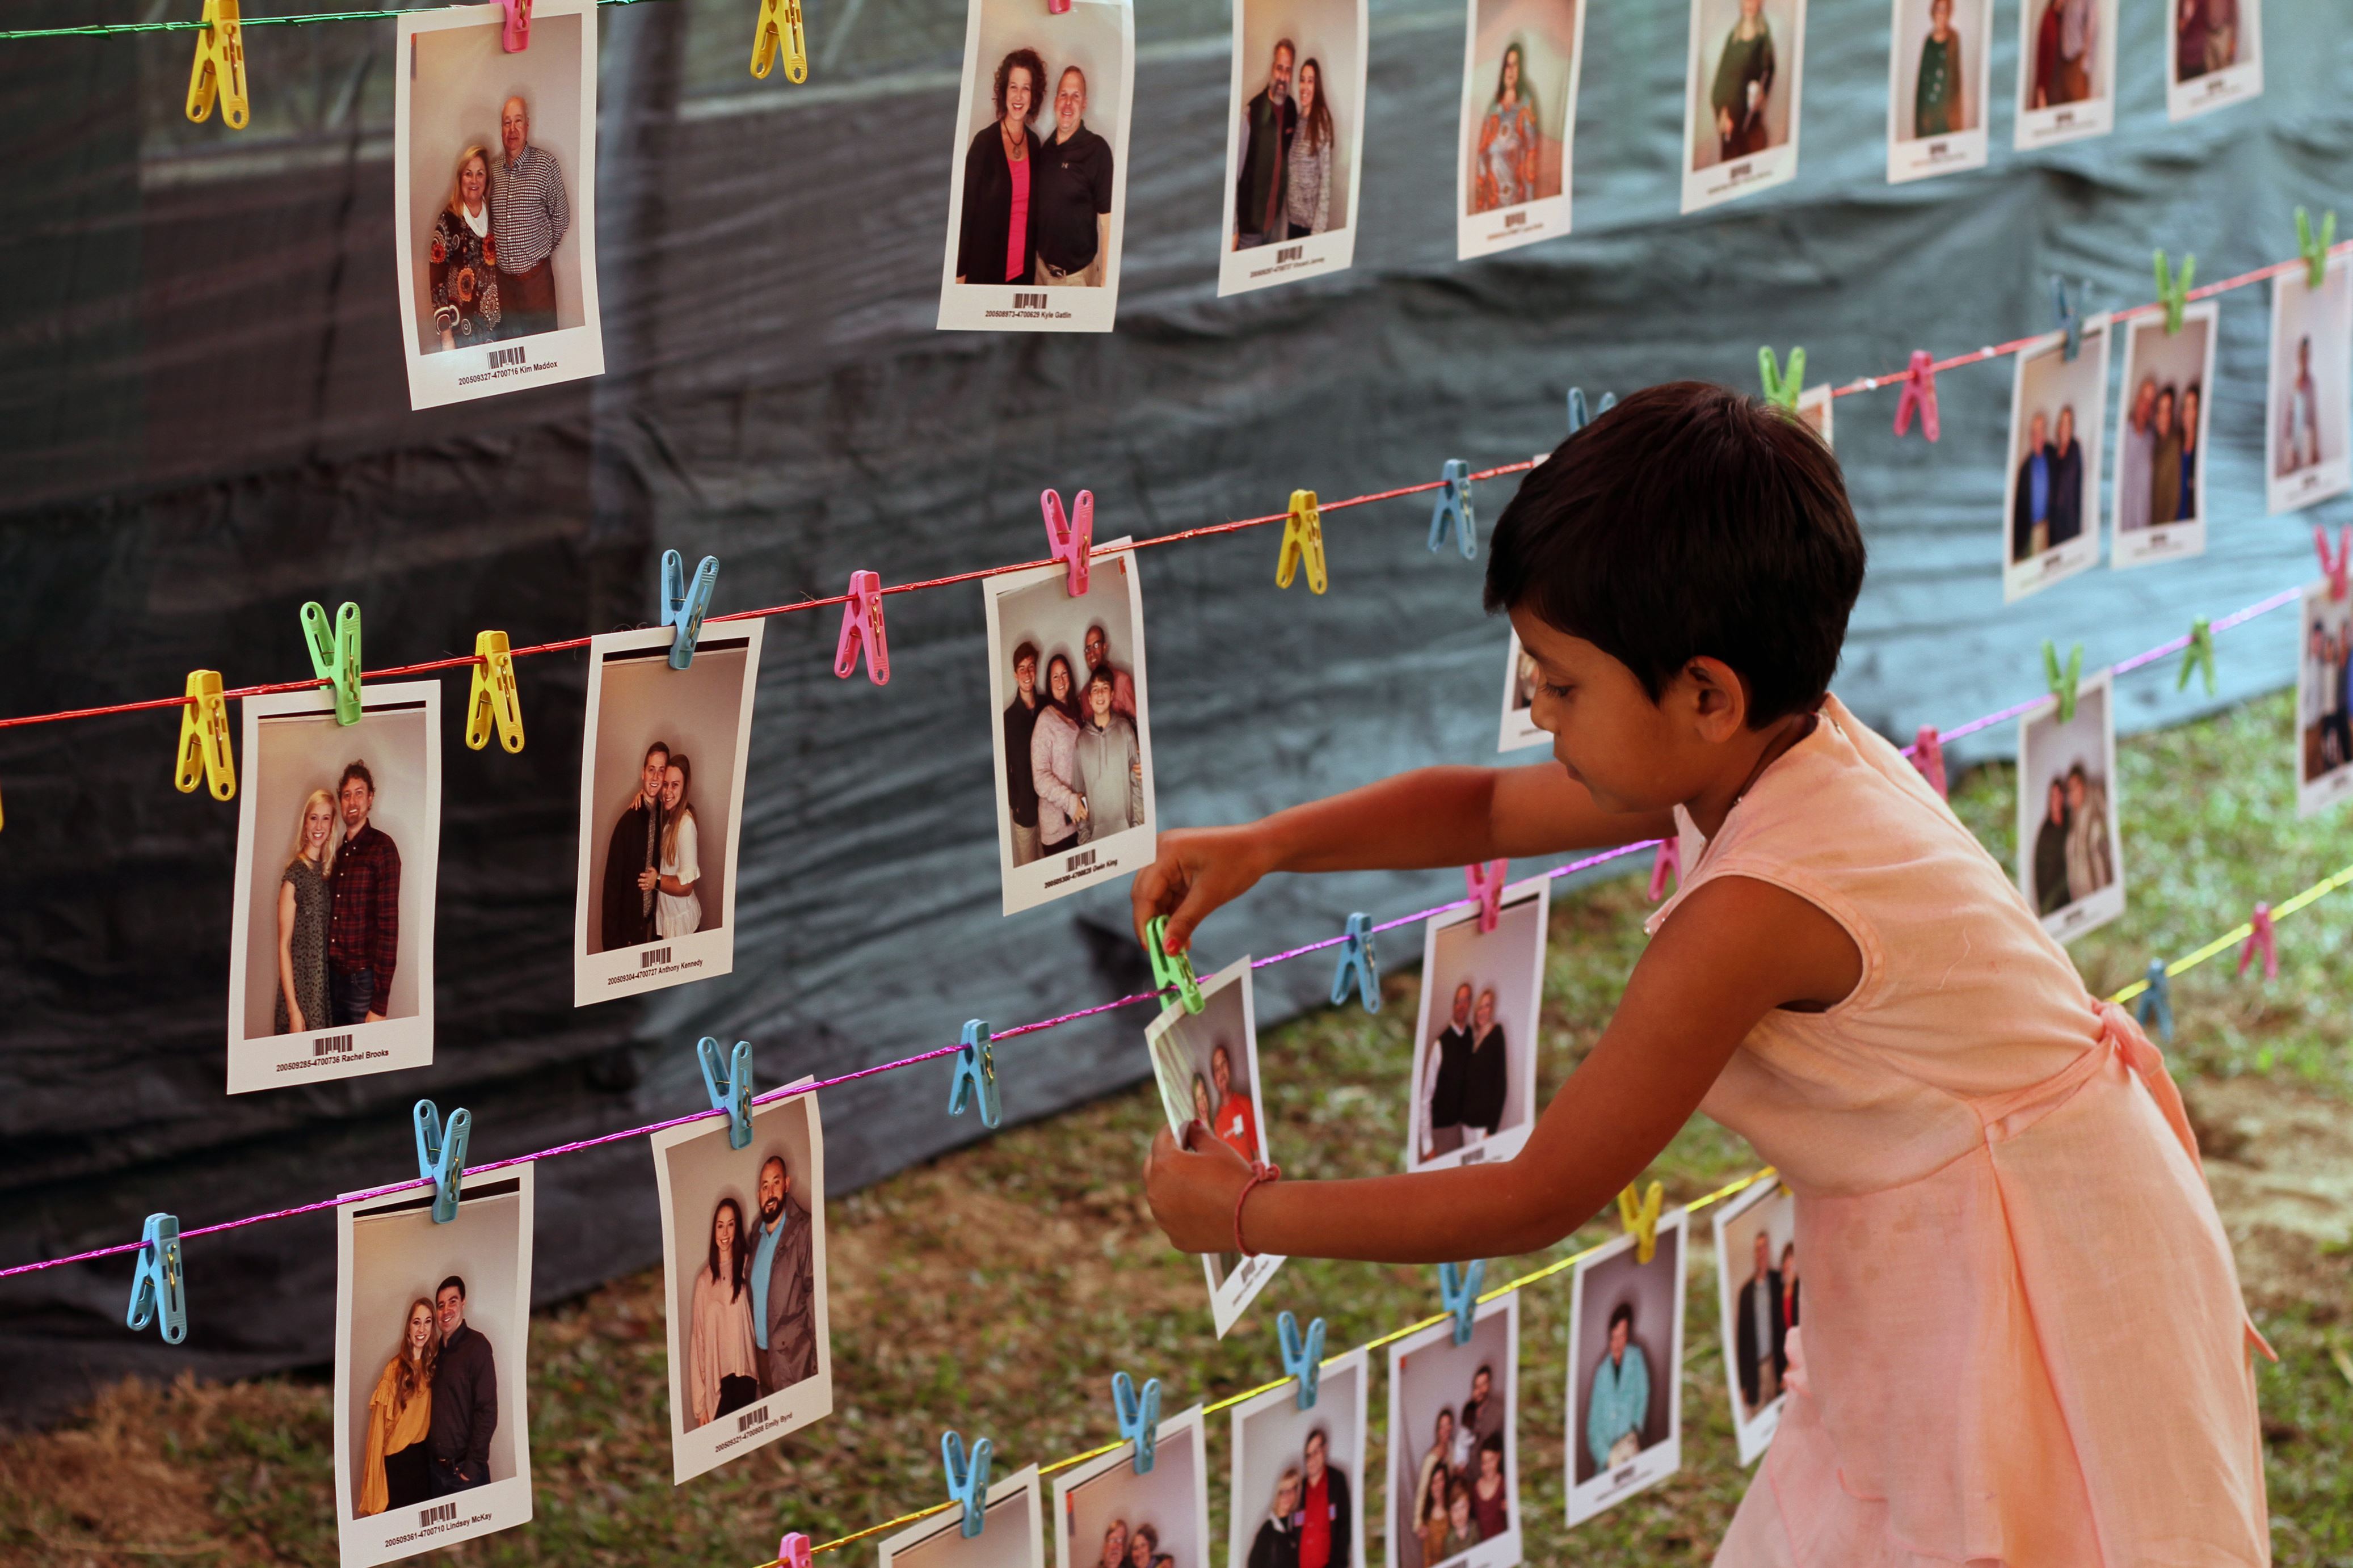 Chica en Bangladesh con un vestido rosa toma una foto de tres líneas de fotos de posibles patrocinadores que cuelgan de cables en una habitación